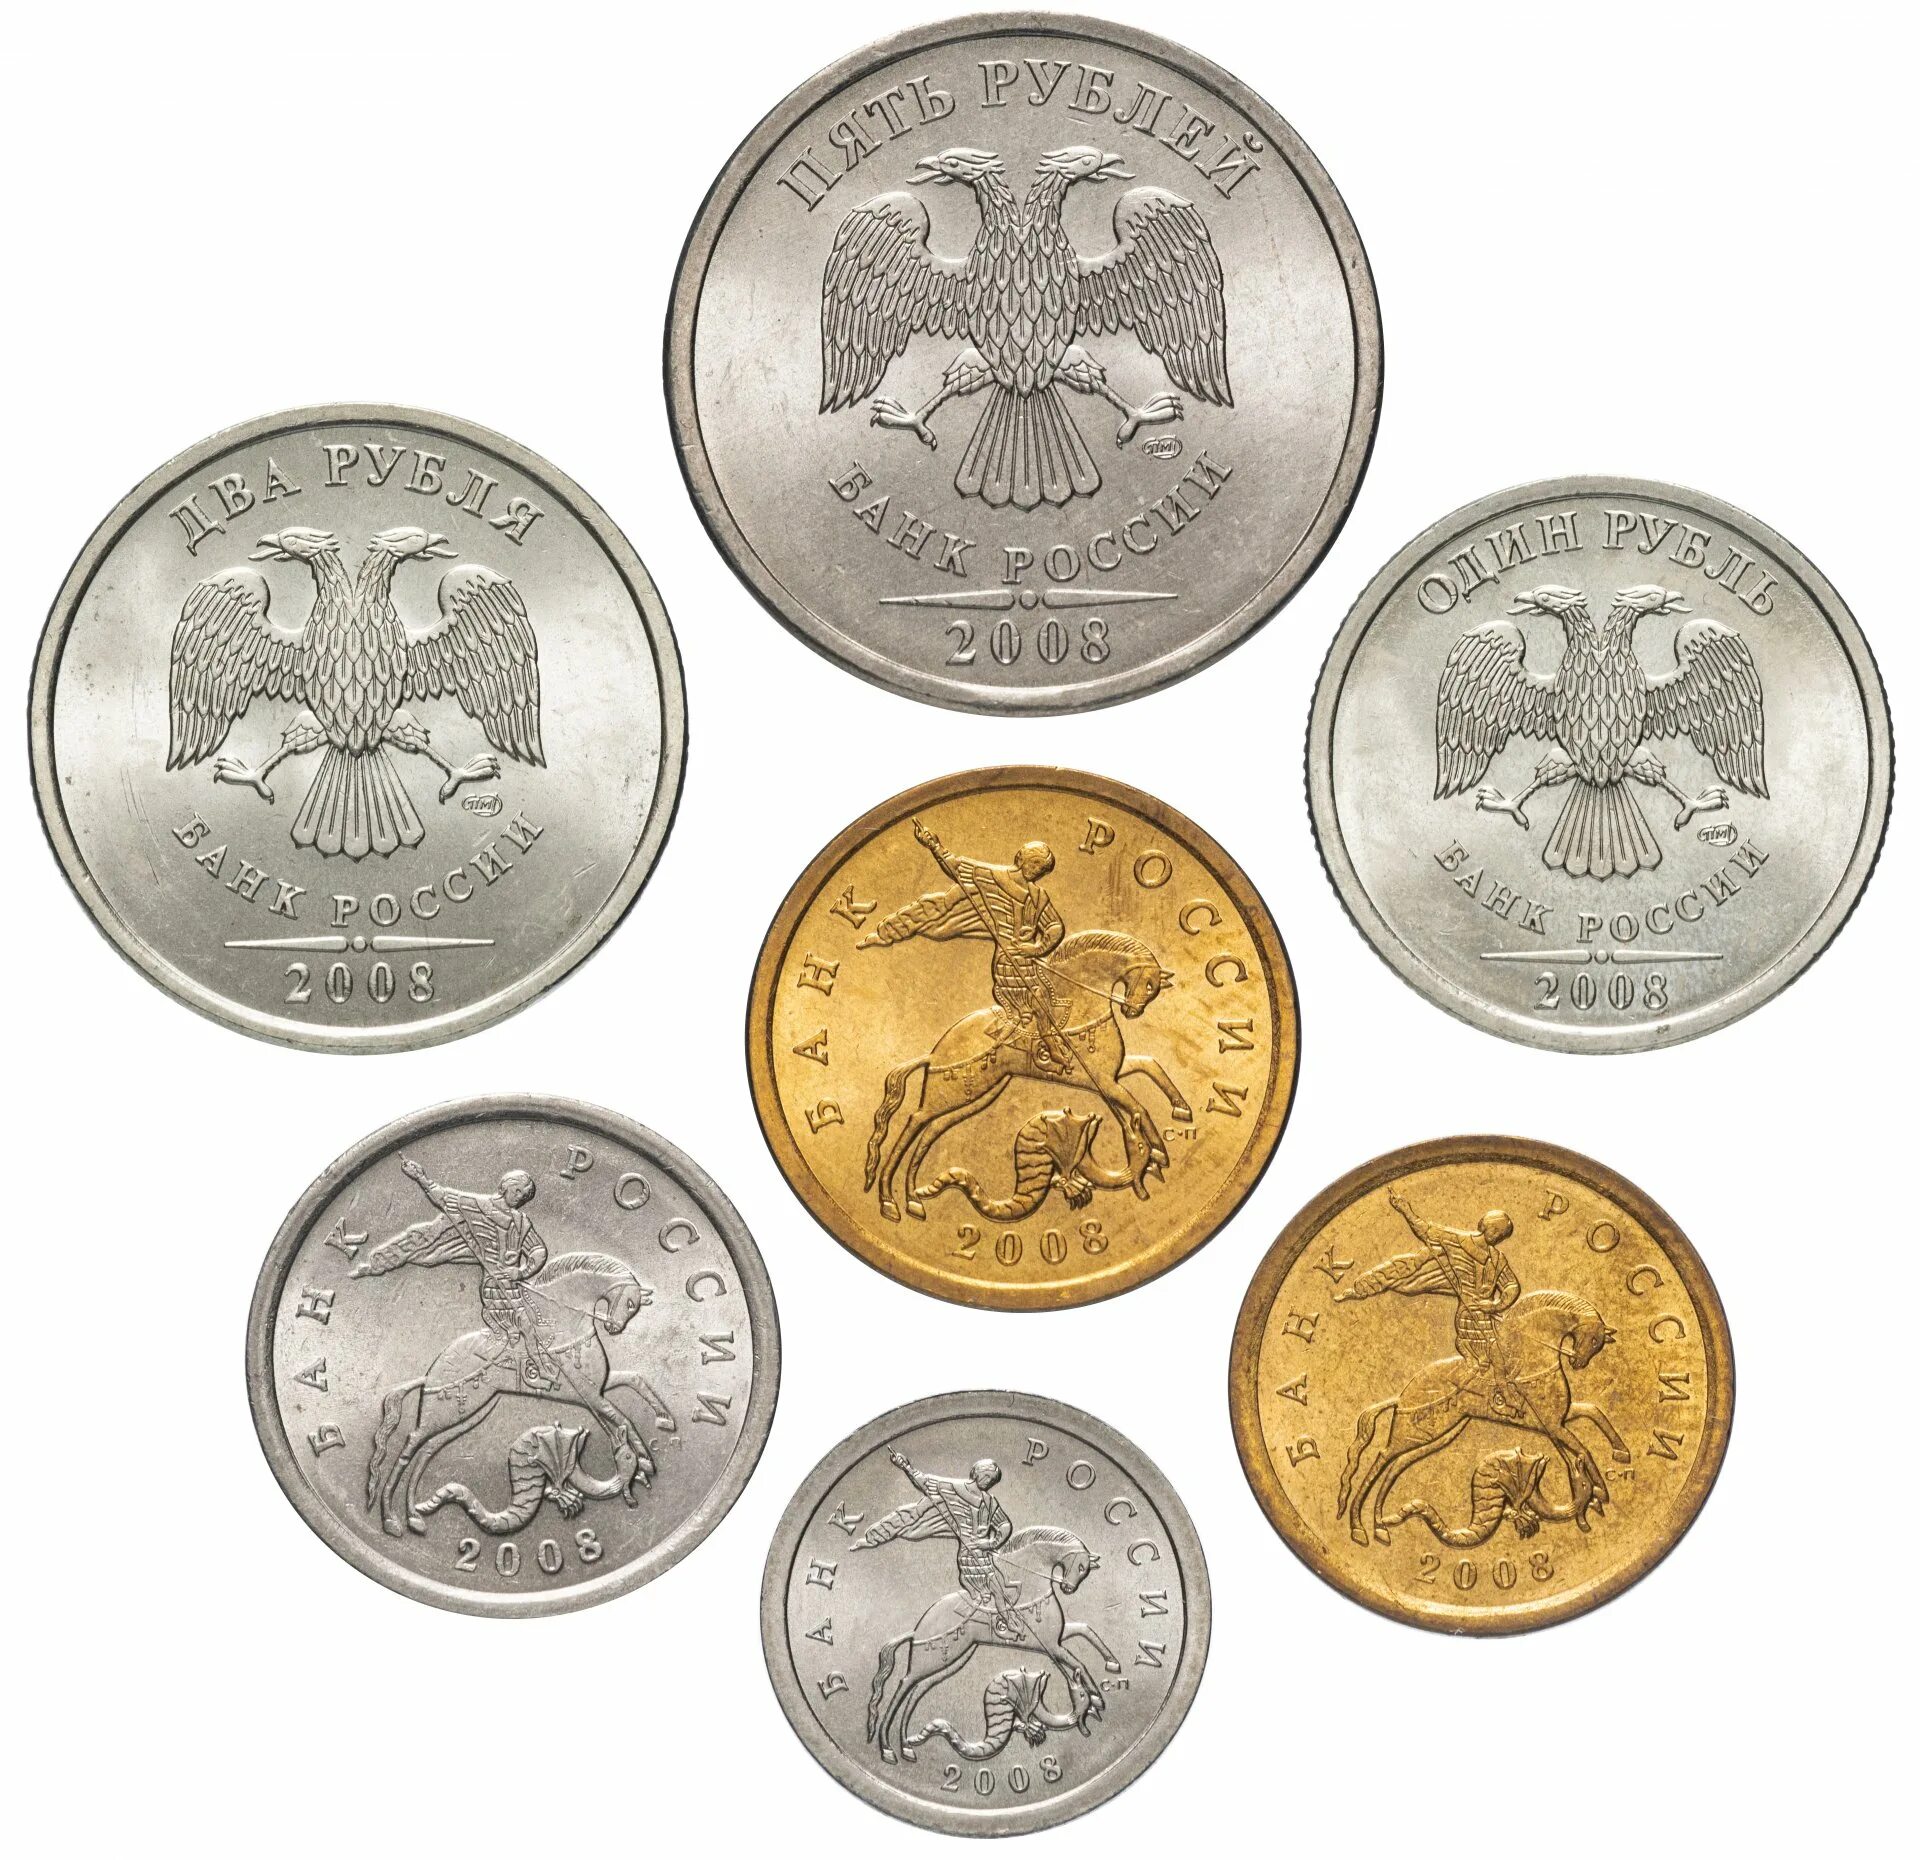 Coins россии